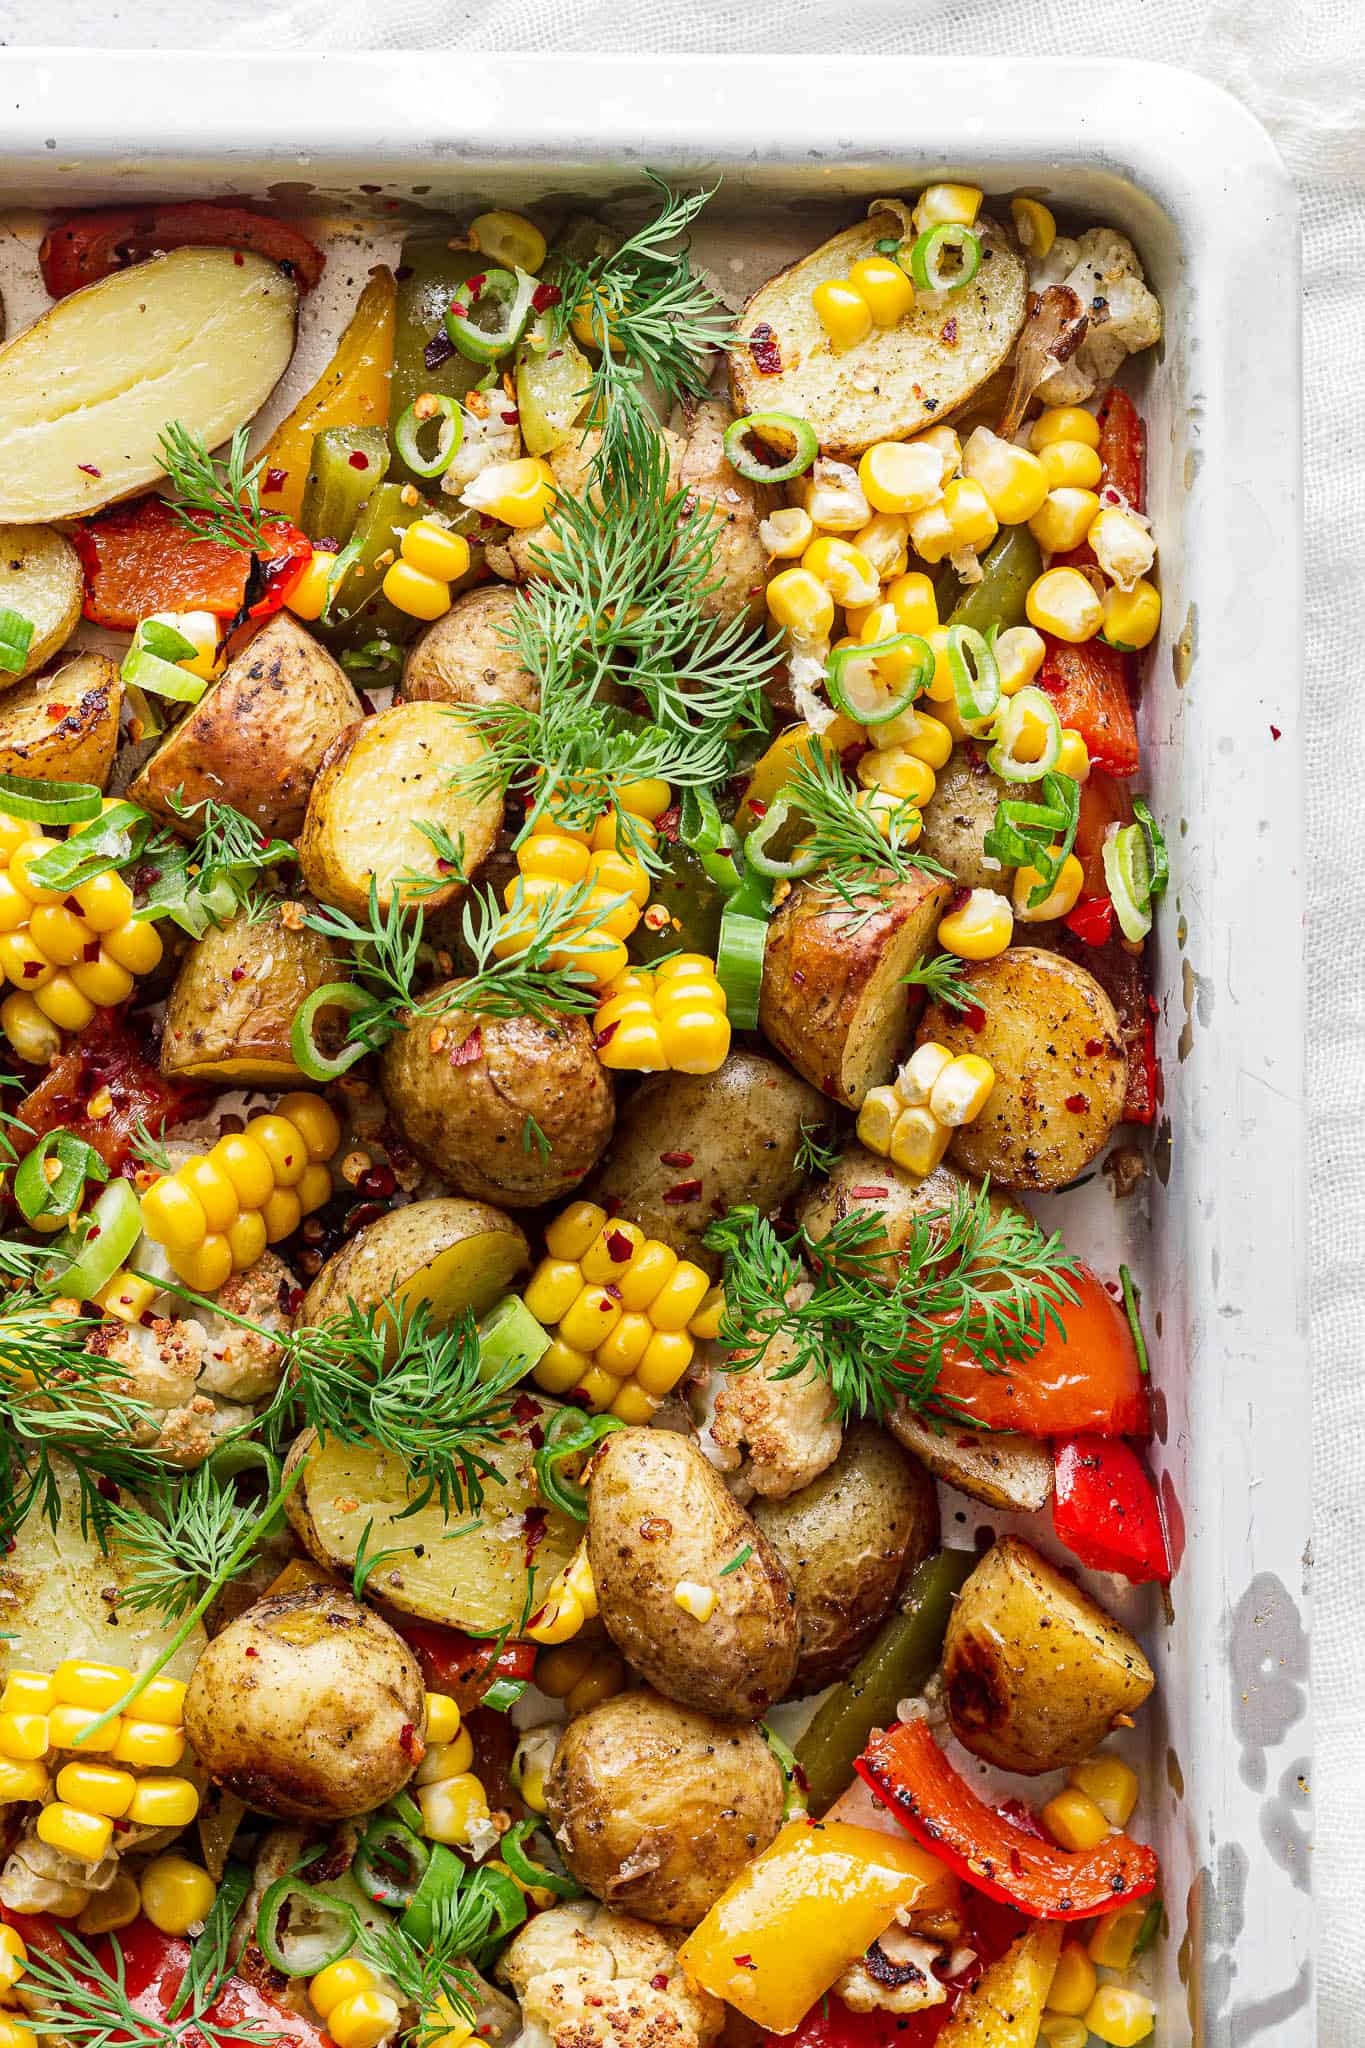 Ovnbagte kartofler, grøntsager og majskolber nemt på 30